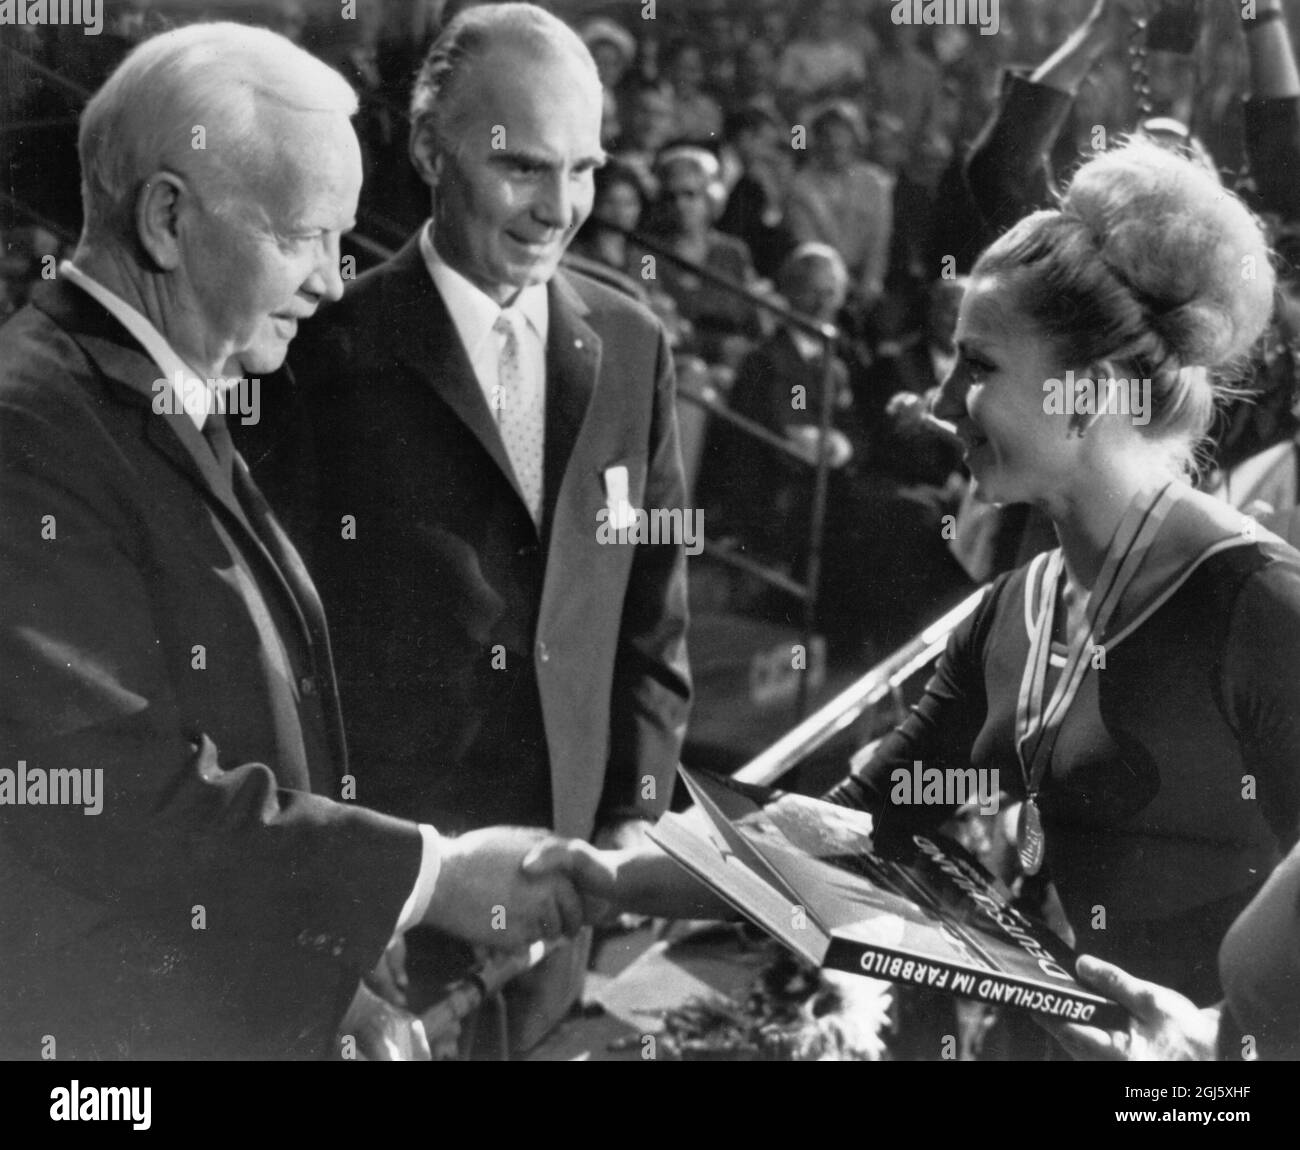 Dortmund , Allemagne de l'Ouest : la Présidente de l'Allemagne de l'Ouest, Heirrich Luebke (à gauche), félicite Vera Caslavska , de Tchécoslovaquie, après avoir remporté la médaille d'or pour l'événement féminin combiné aux Championnats du monde de gymnastique . 25 septembre 1966 Banque D'Images